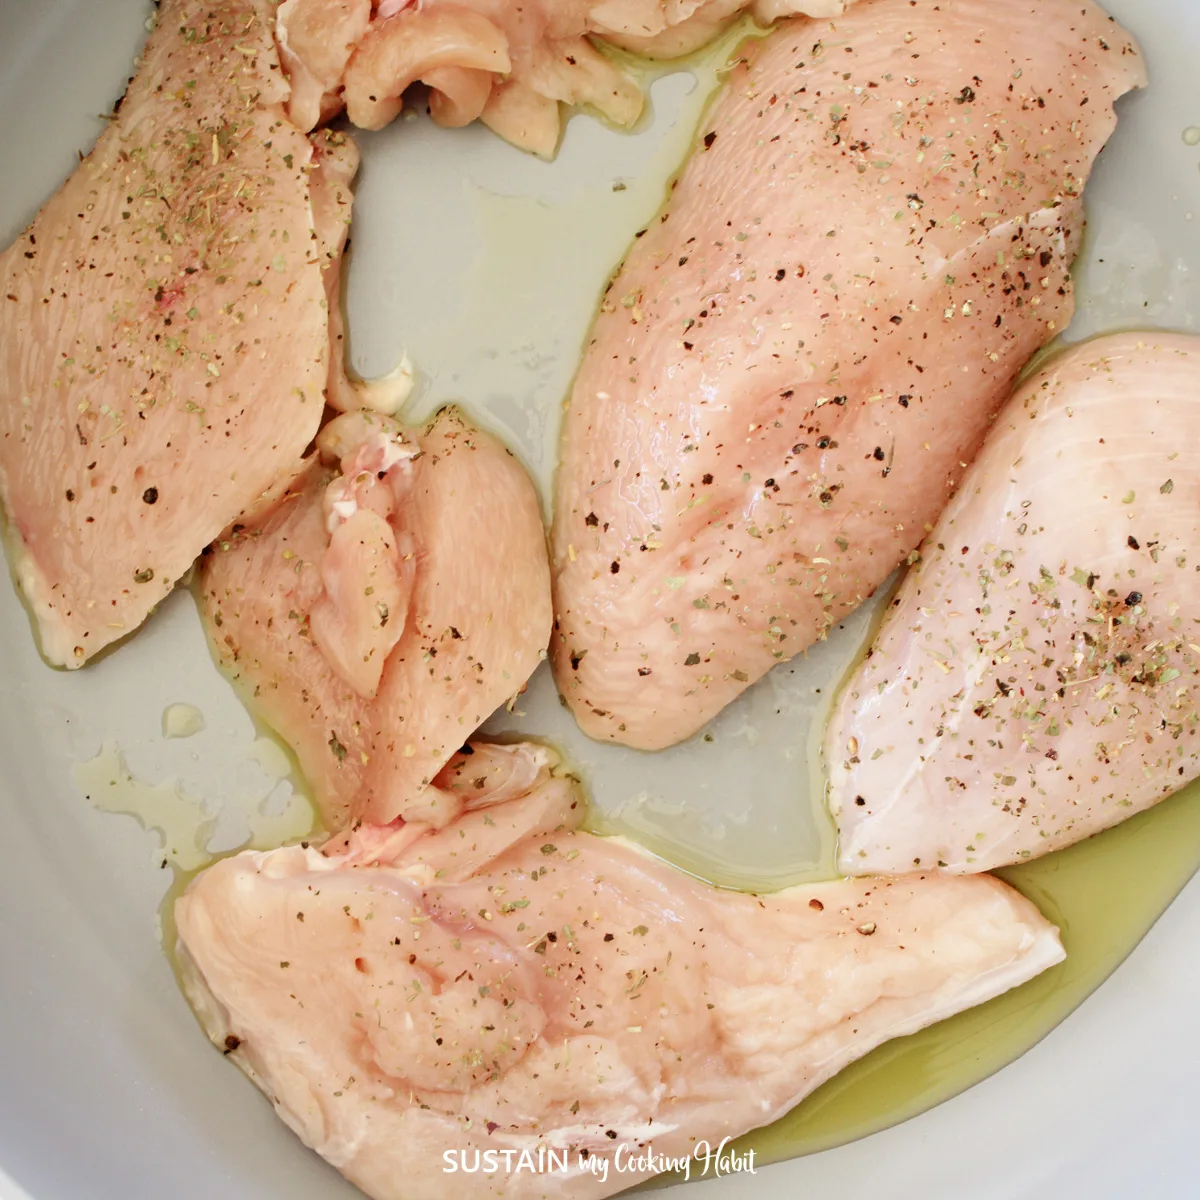 Seasoned chicken breast in a pan.